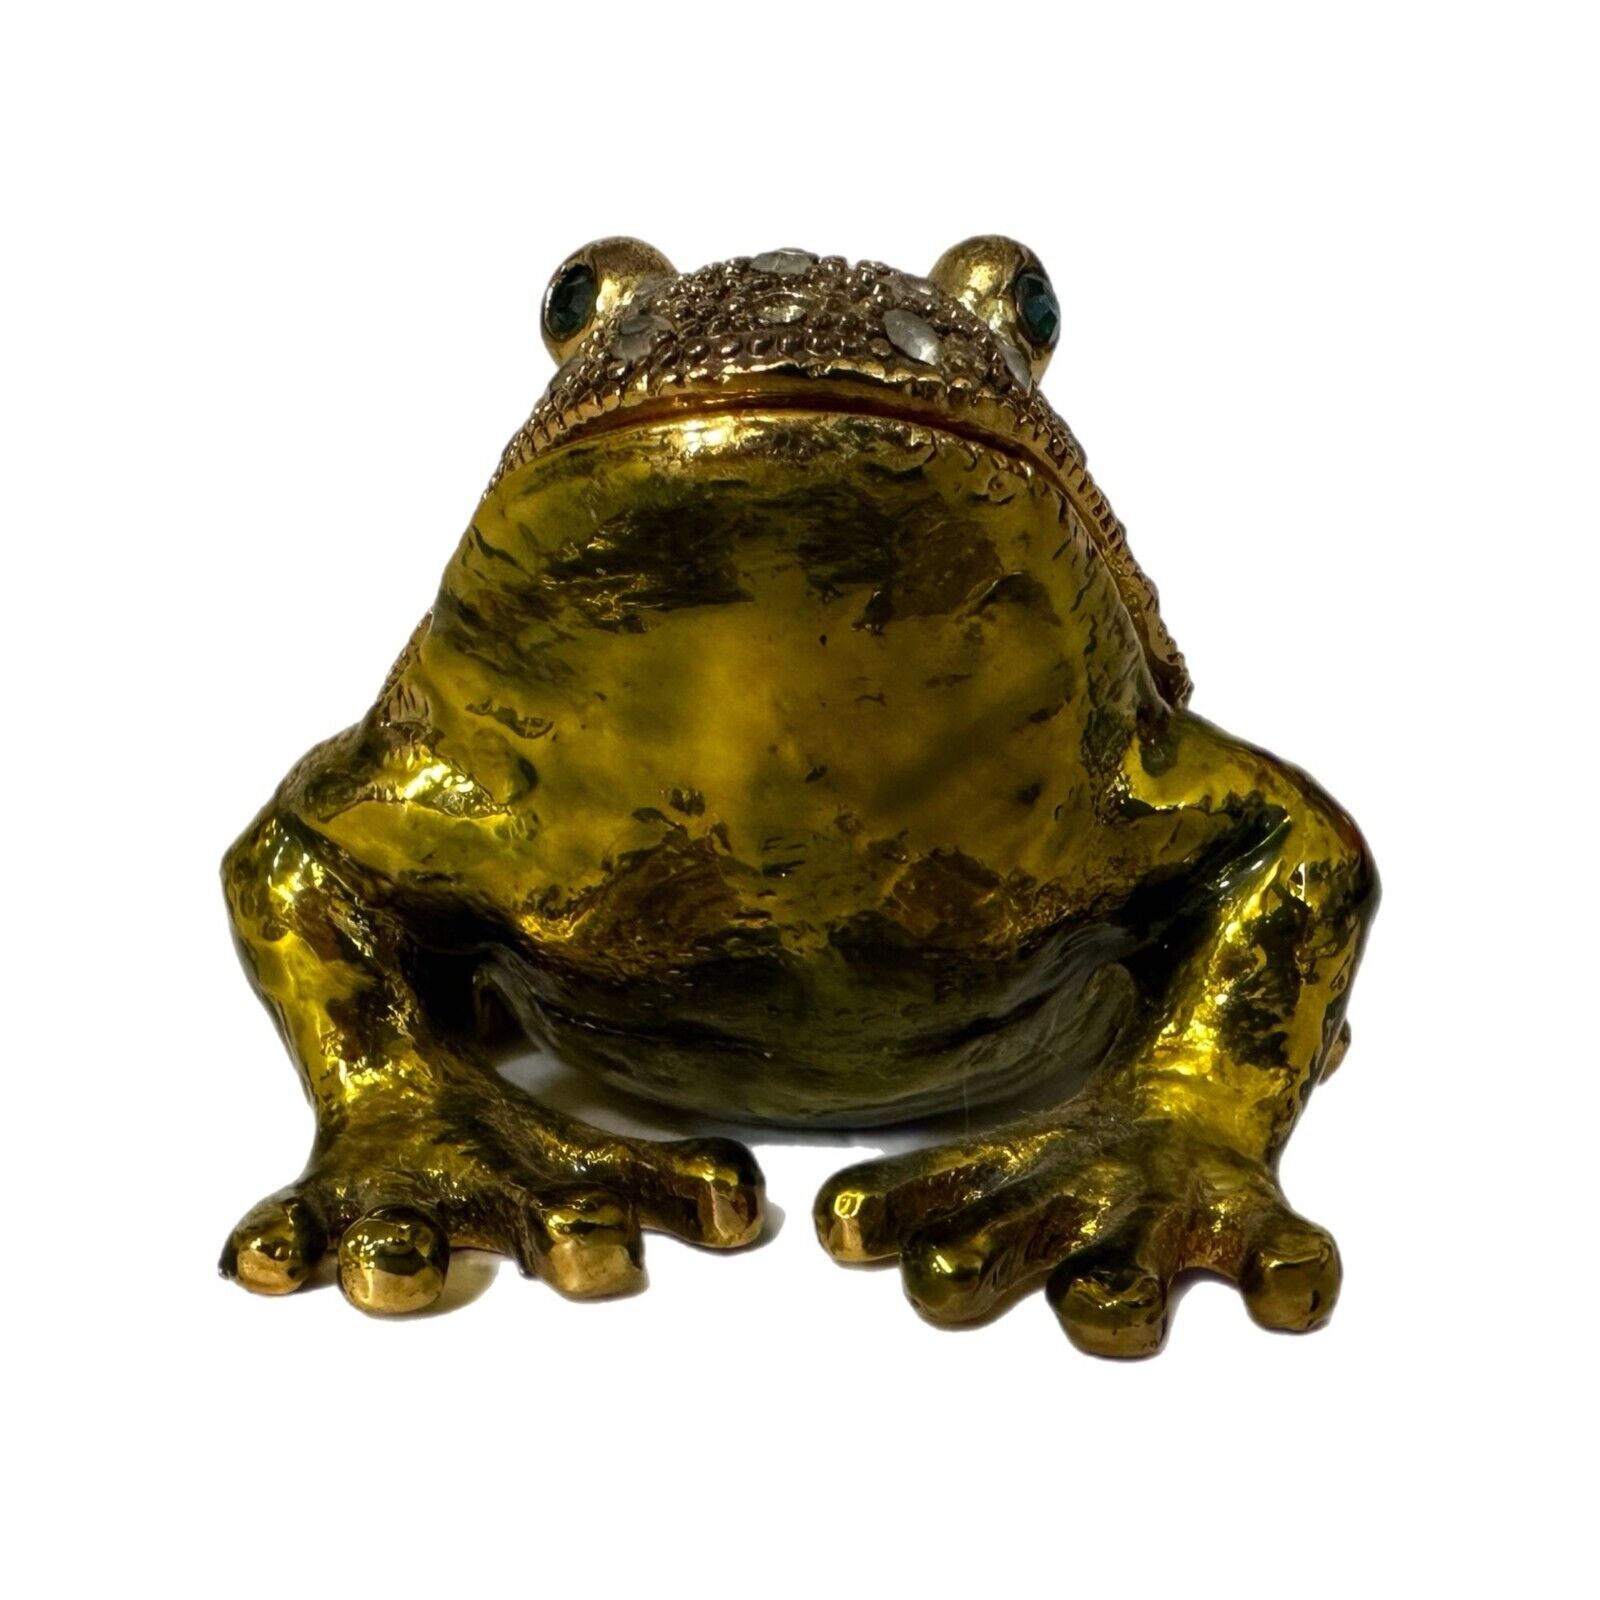 Frog Trinket Box Large Jeweled Enameled Heavy Magnetic Closure Missing 6 Stones